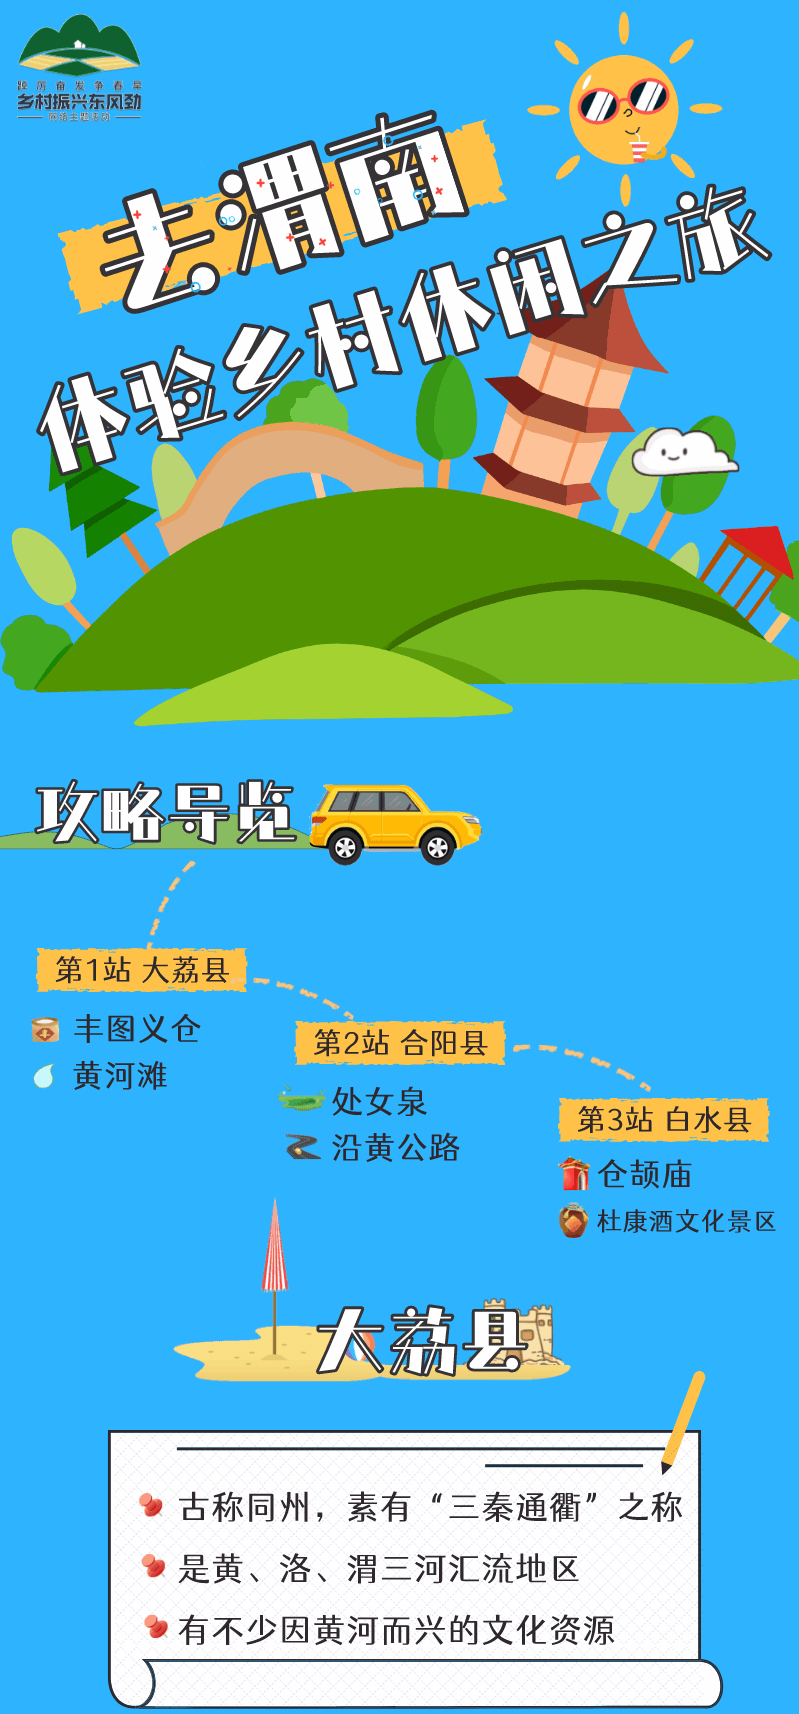 【乡村振兴东风劲】动态图解去渭南体验乡村休闲之旅(图1)